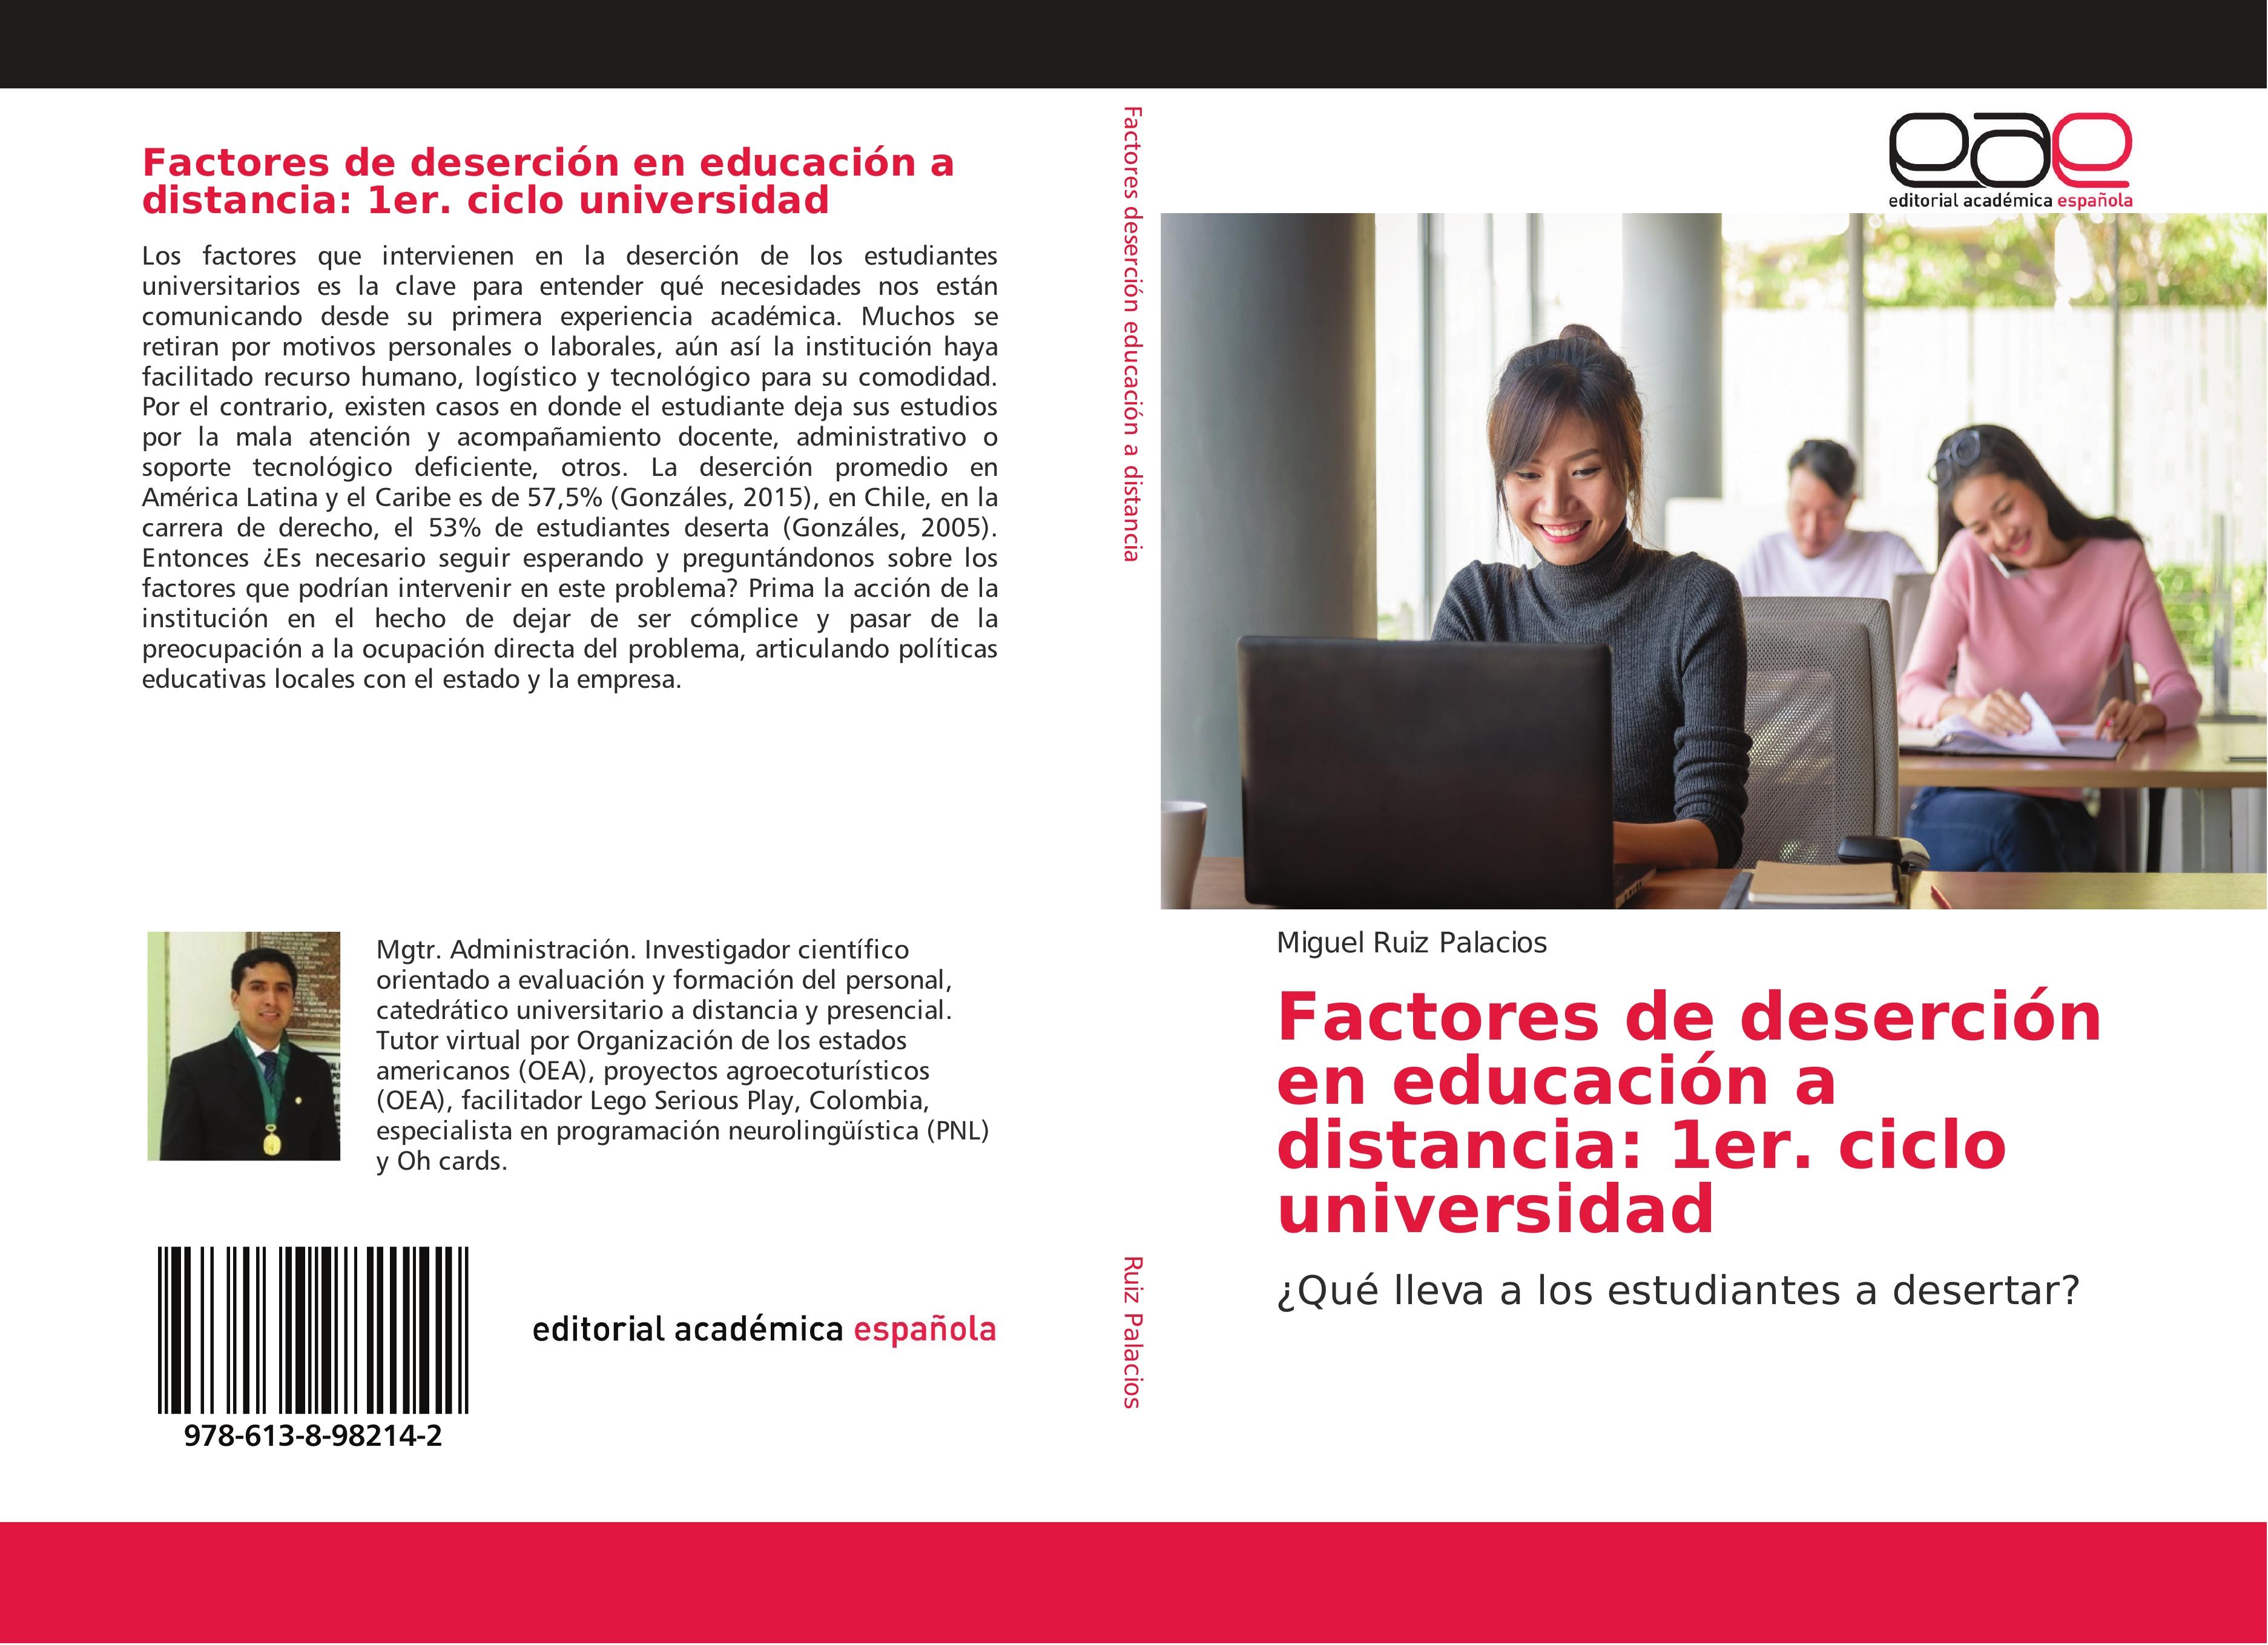 Factores de deserción en educación a distancia: 1er. ciclo universidad - Miguel Ruiz Palacios